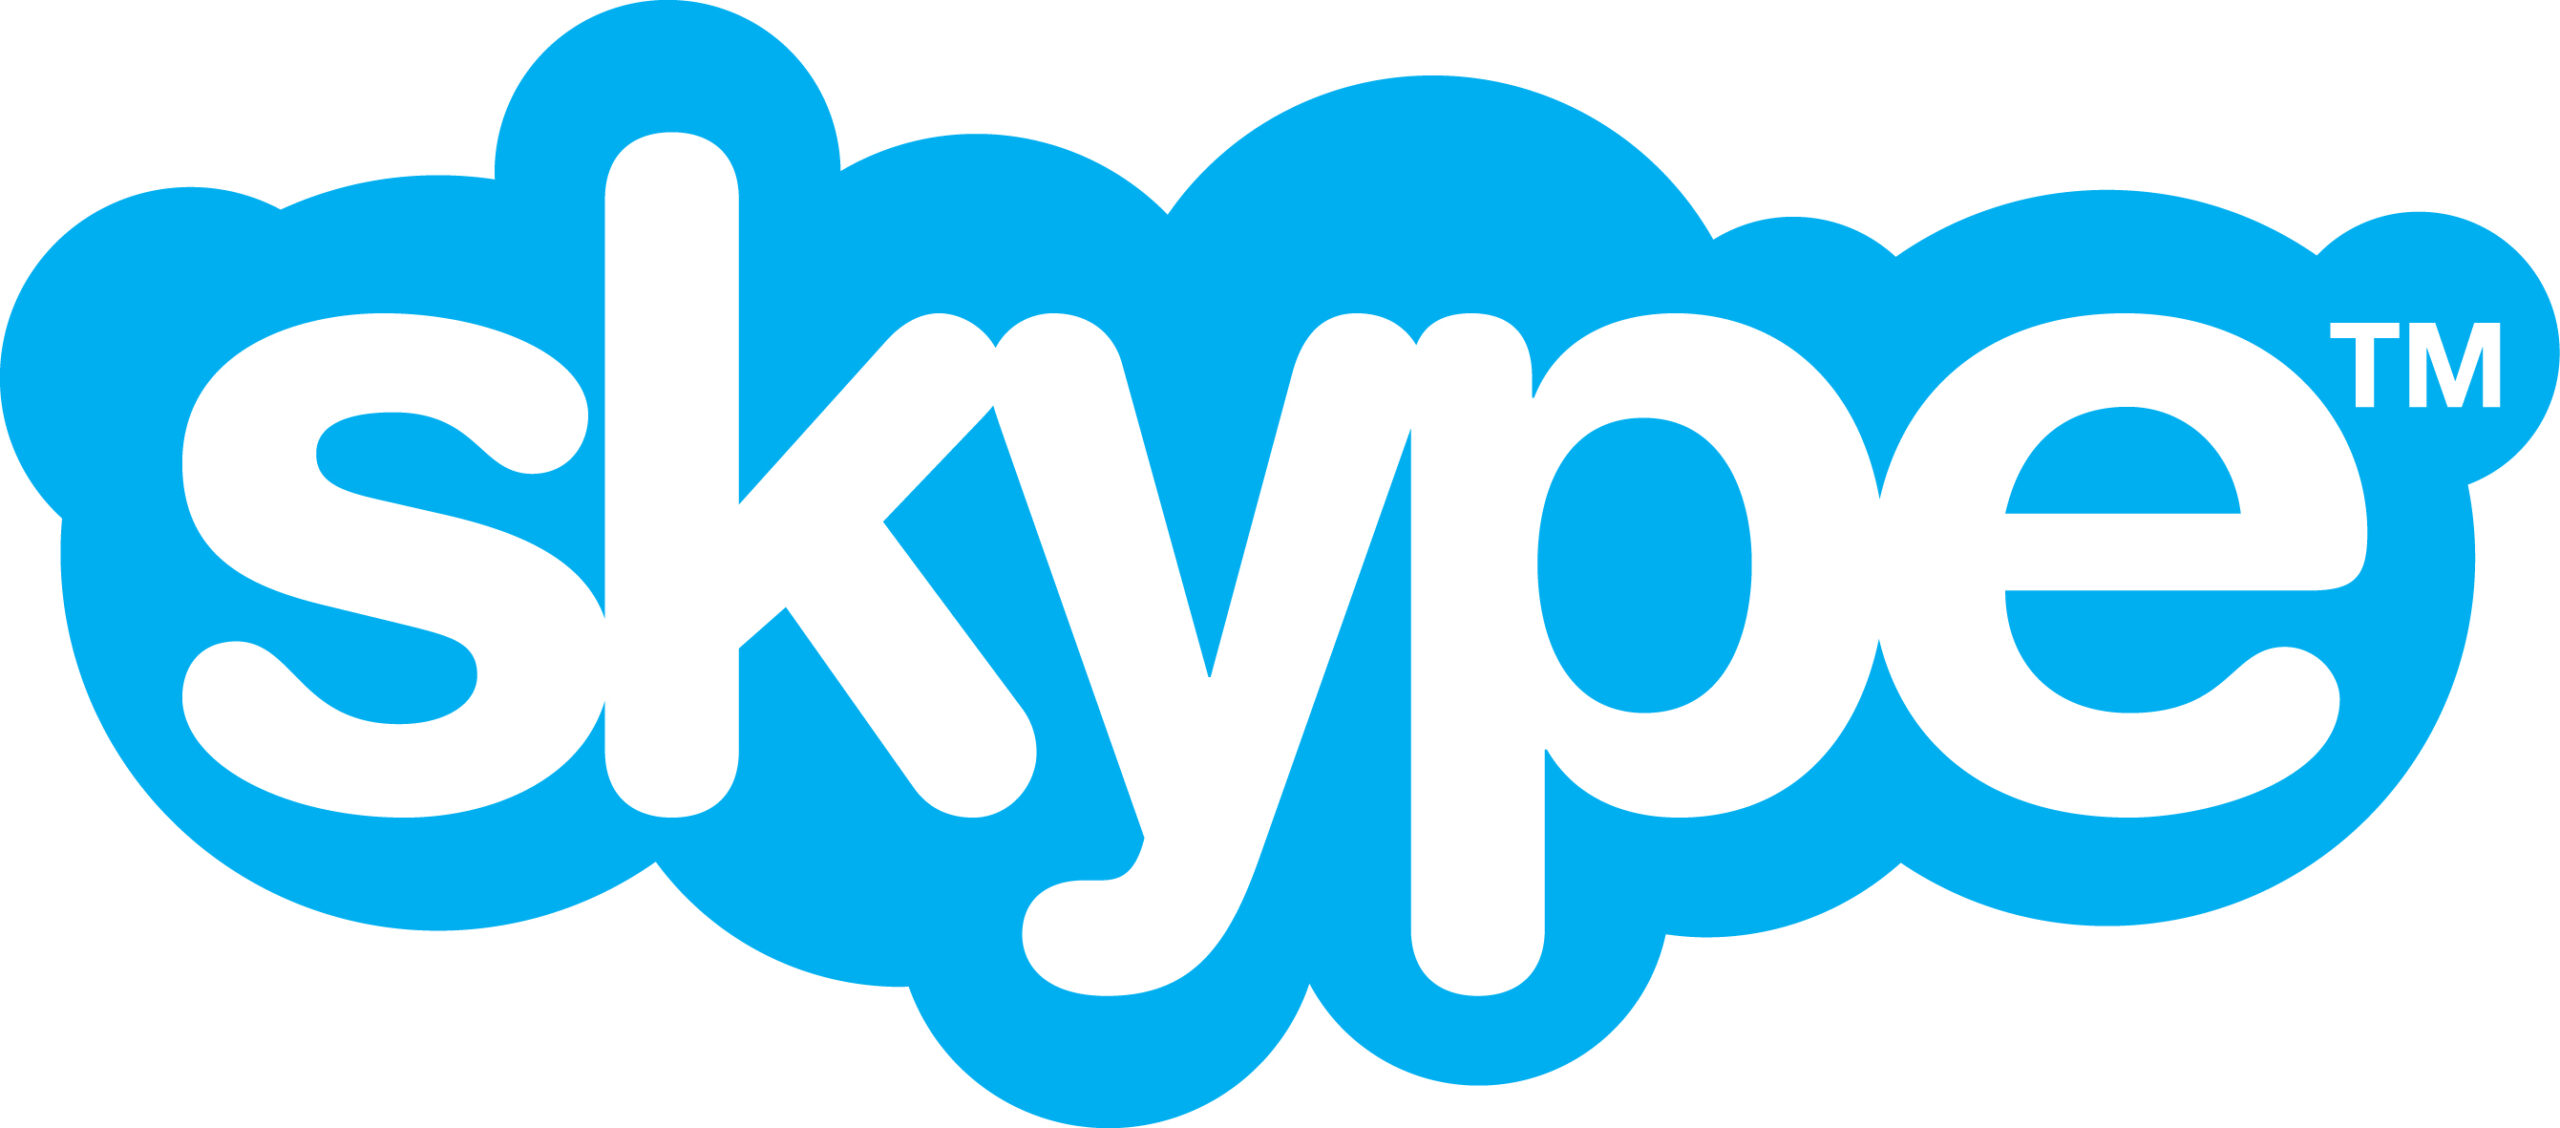 How To Create Skype Account In Urdu